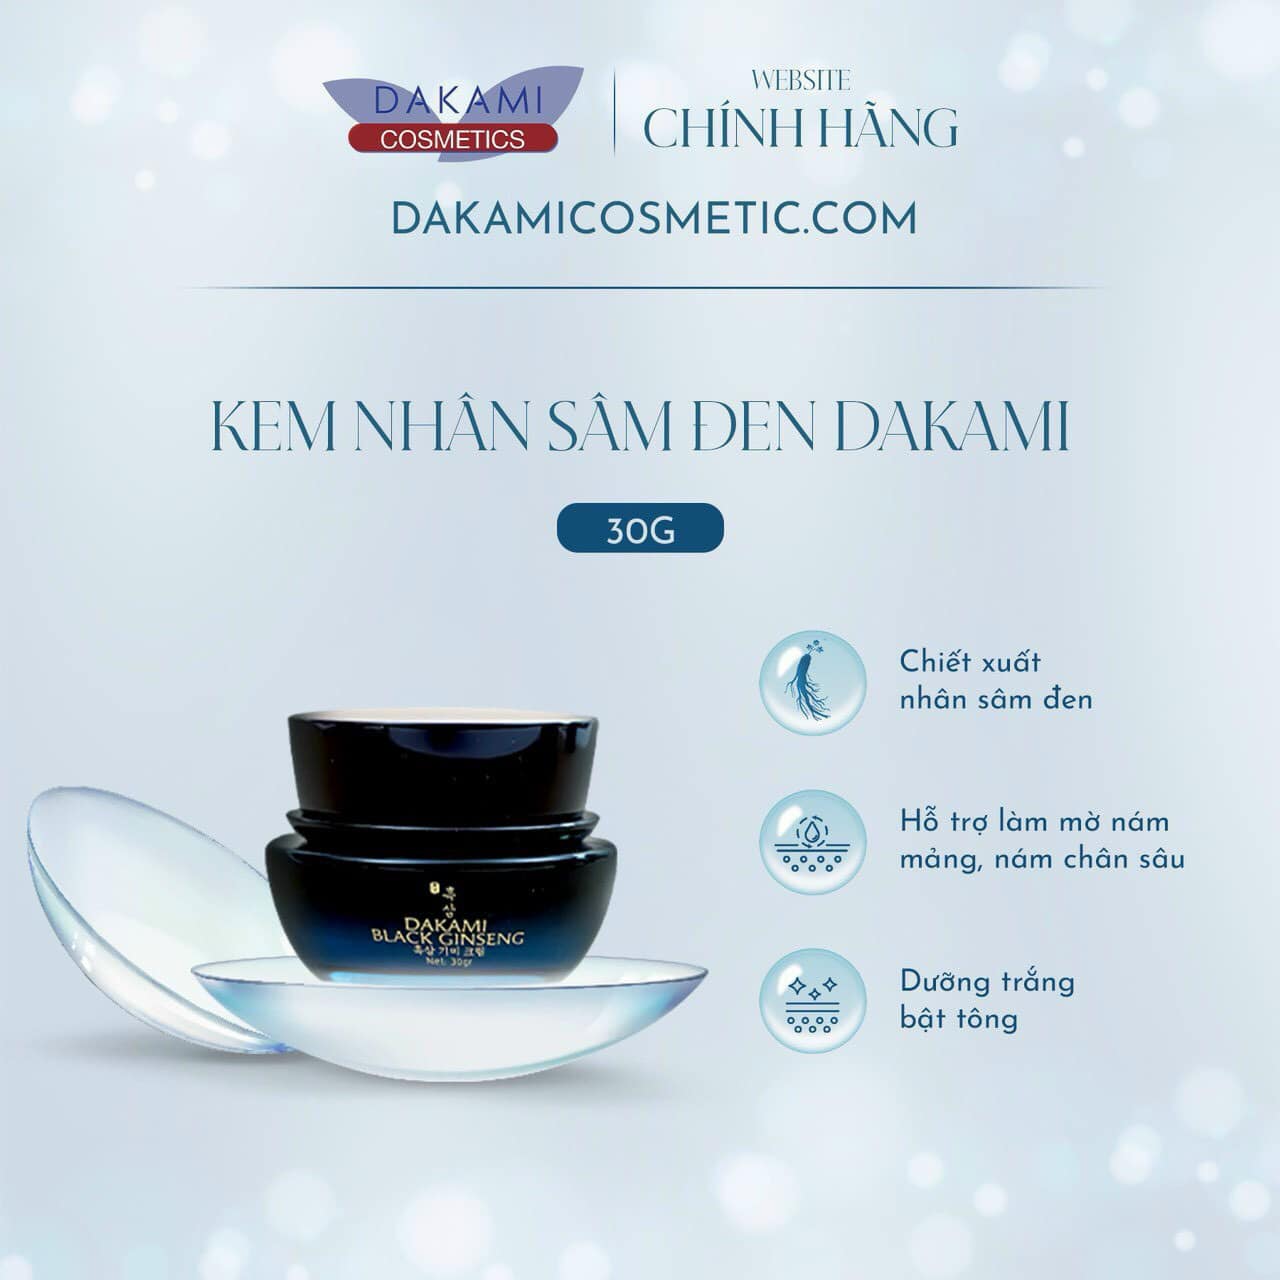 Kem nhân sâm đen  Dakami Black Ginseng là sản phẩm dưỡng da mới nhất của thương hiệu Dakami Cosmetic